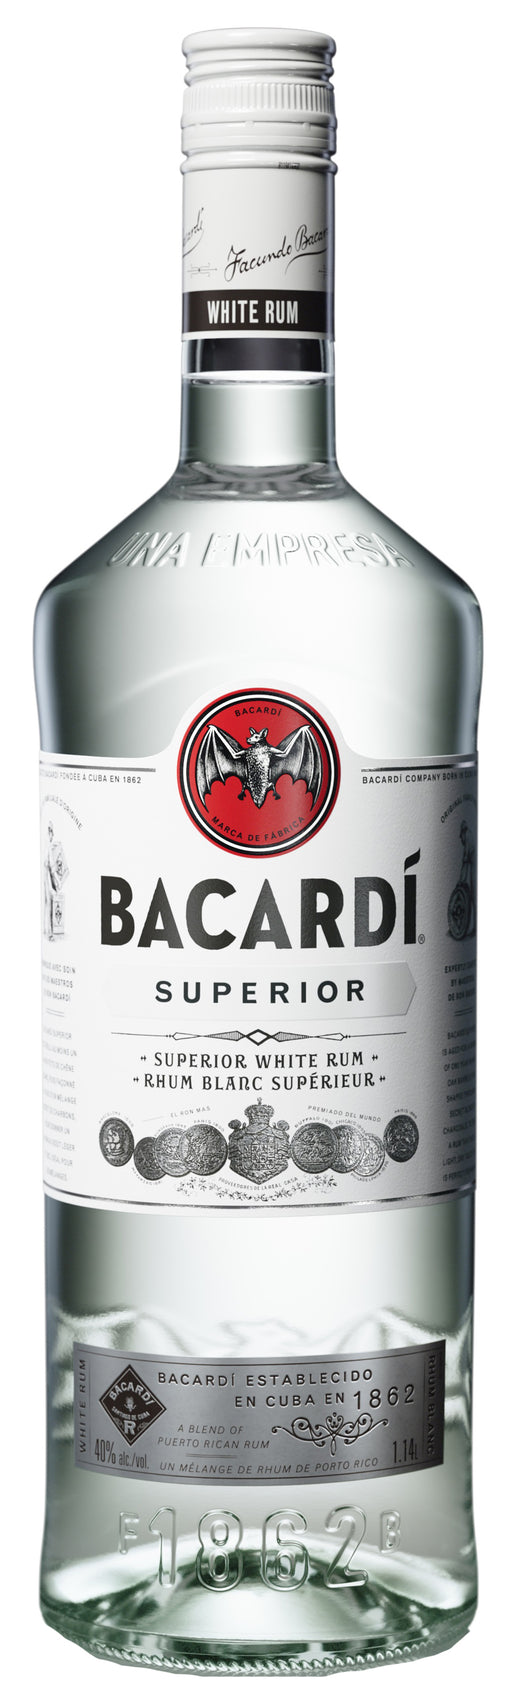 Ром бакарди литр. Ром бакарди белый 1 литр. Ром бакарди белый 1л. Bacardi Superior 1л. Ром "Bacardi" Superior 1л.